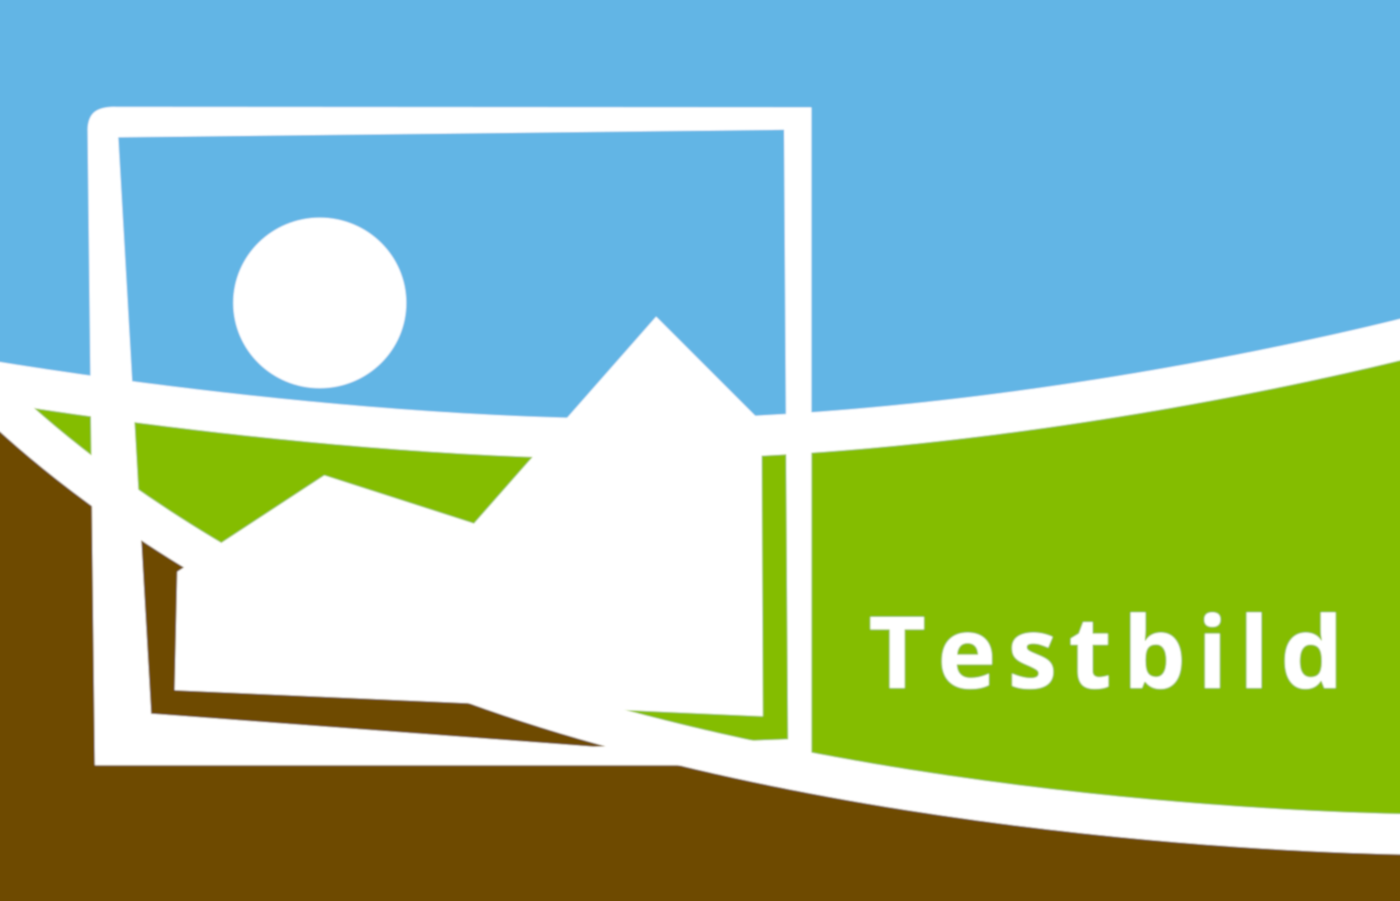 Testbild i blått, grönt och brunt med en ikon av en bildsymbol. Symbolen visar ett berg med en sol. Bilden innehåller texten "Testbild".